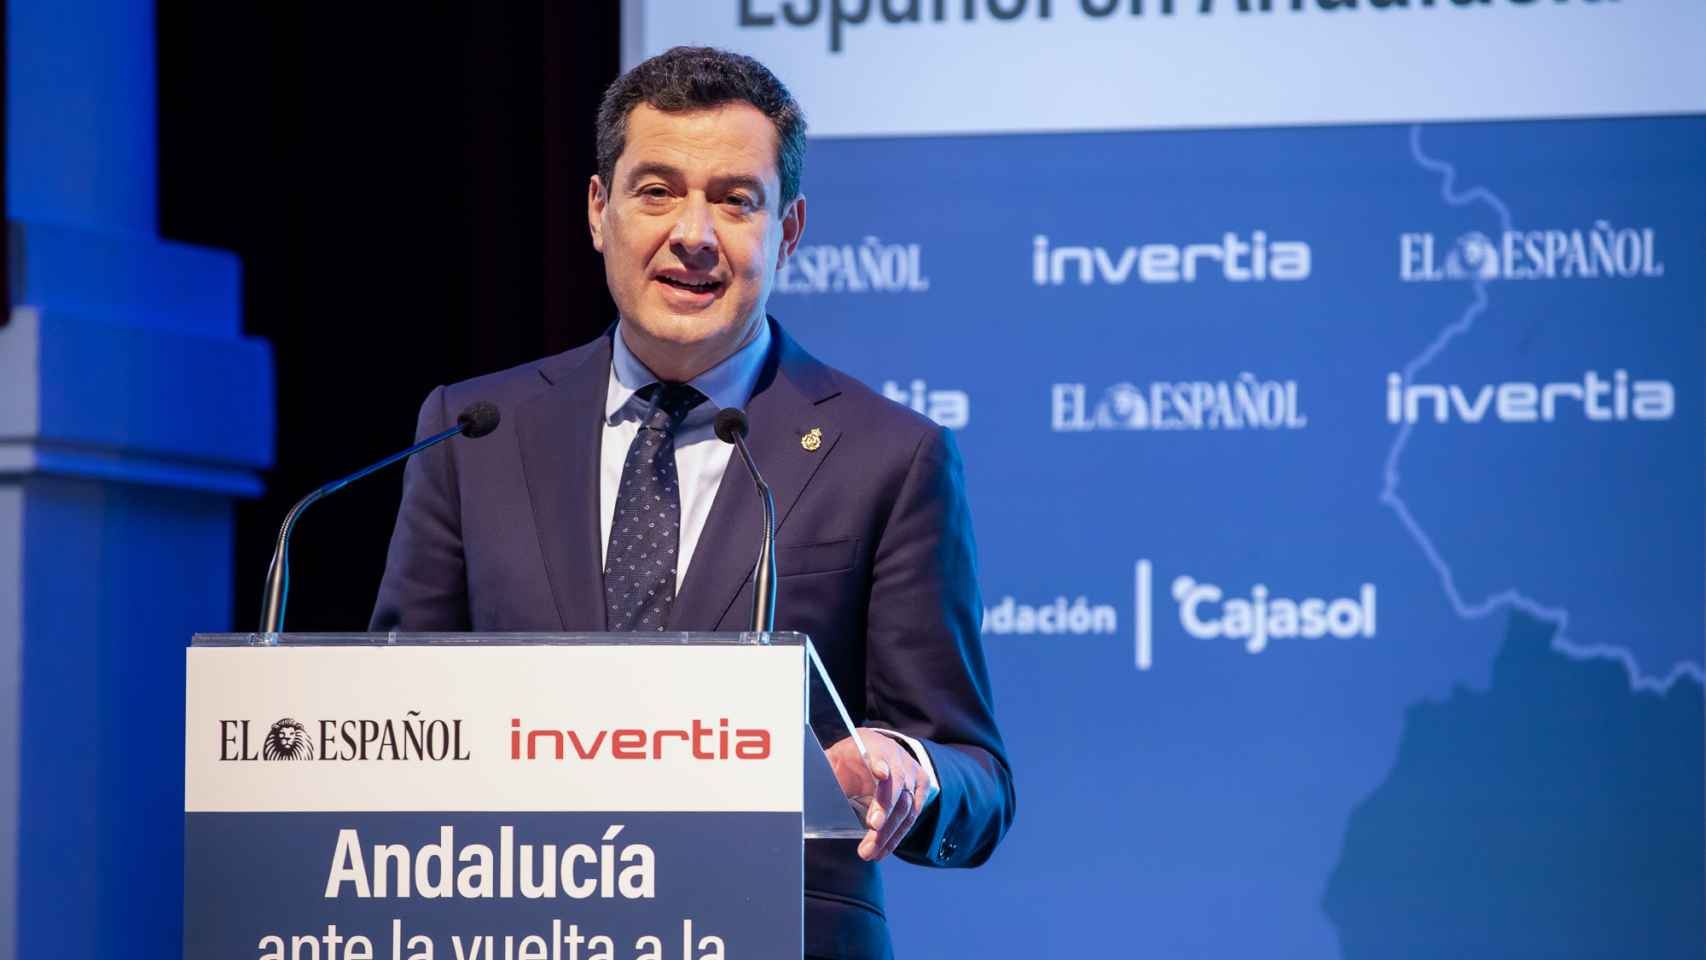 Primera jornada del II Foro Económico Español en Andalucía 'Andalucía ante la vuelta a la normalidad'